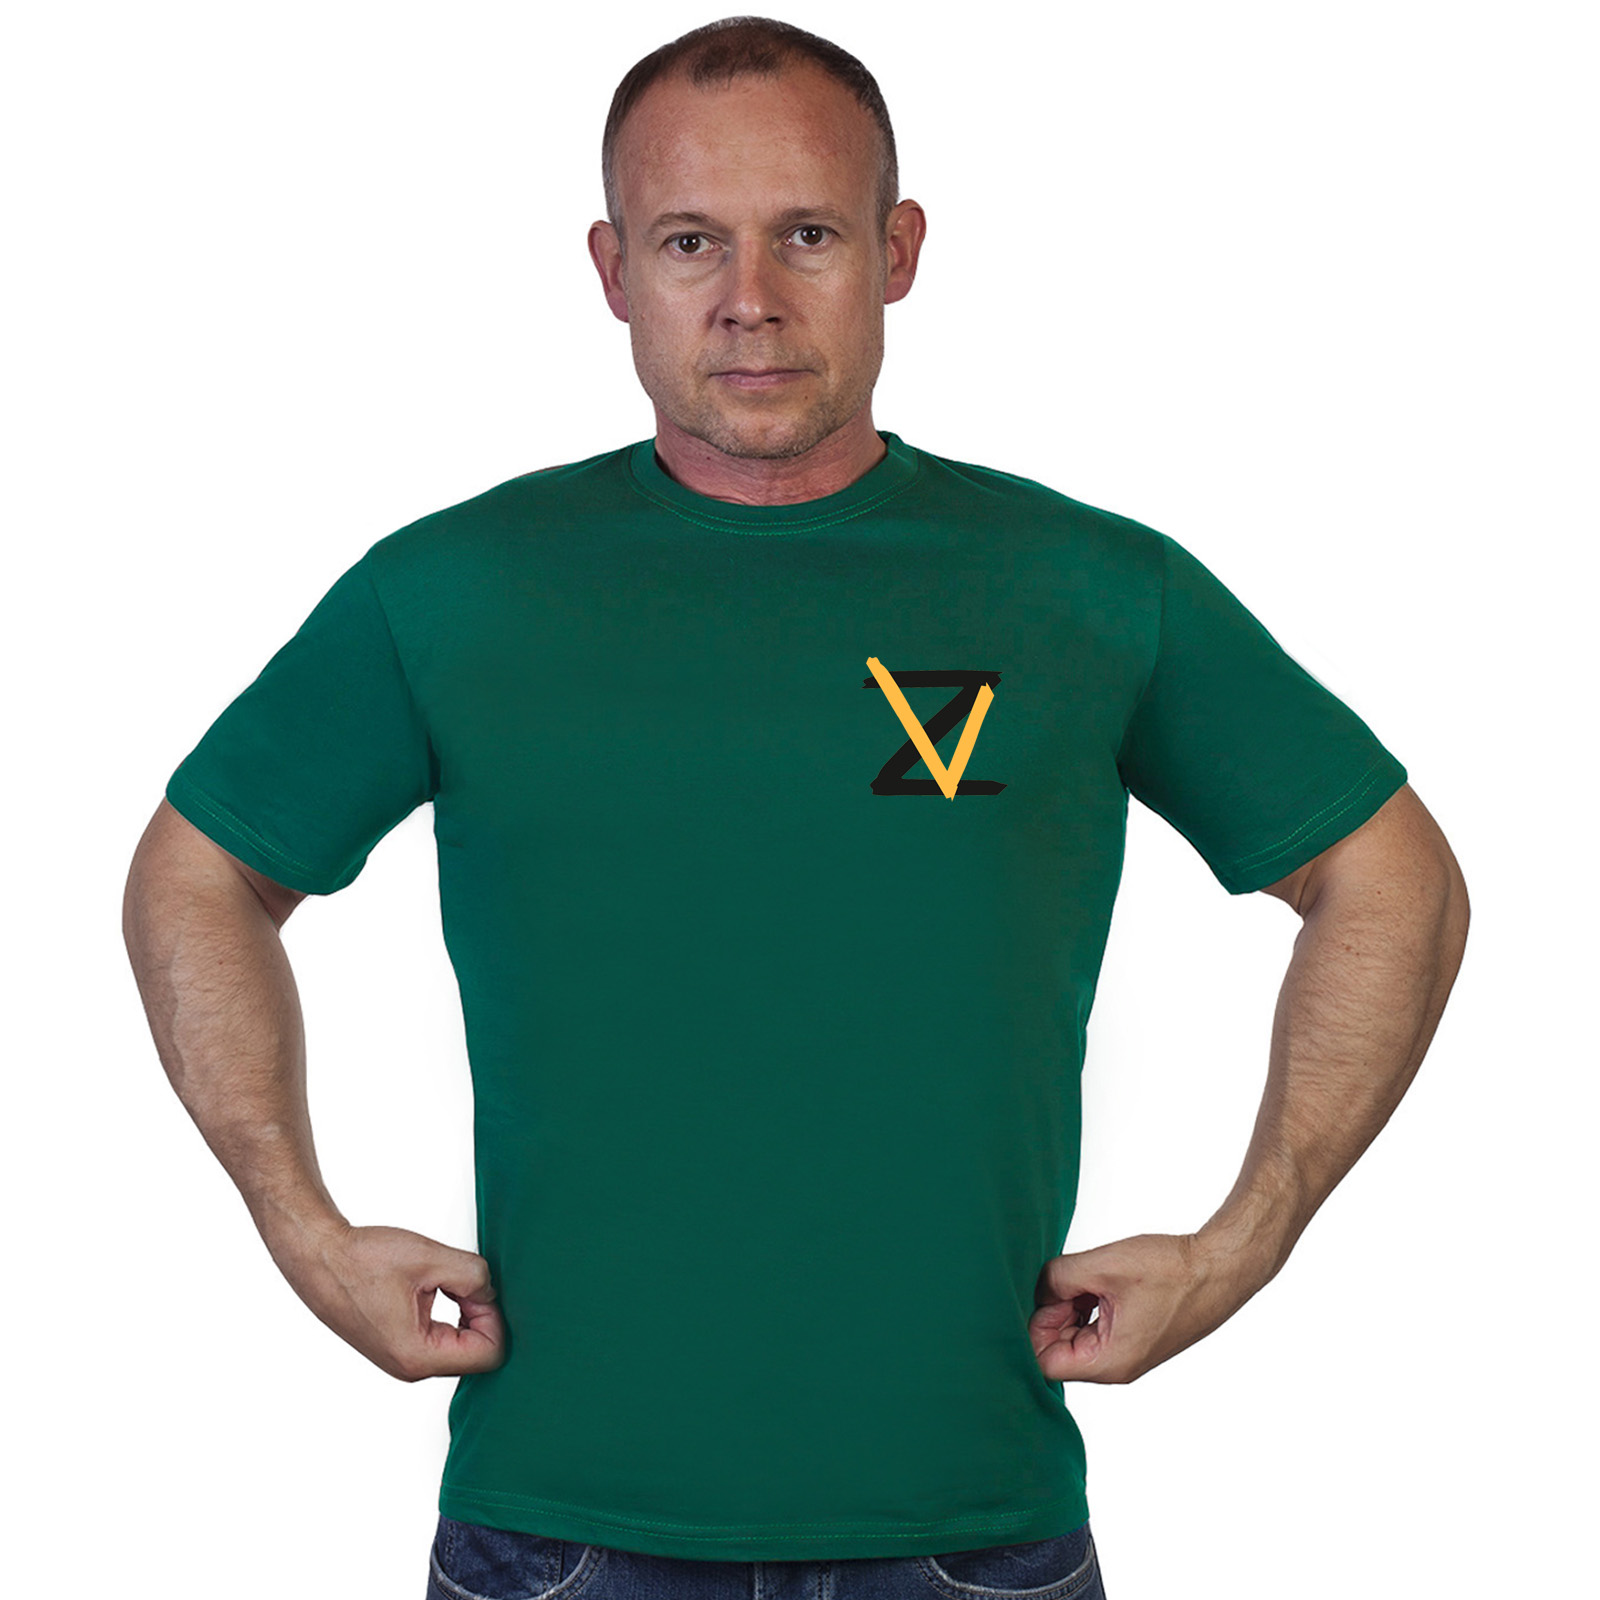 Купить в интернет магазине футболку Z V